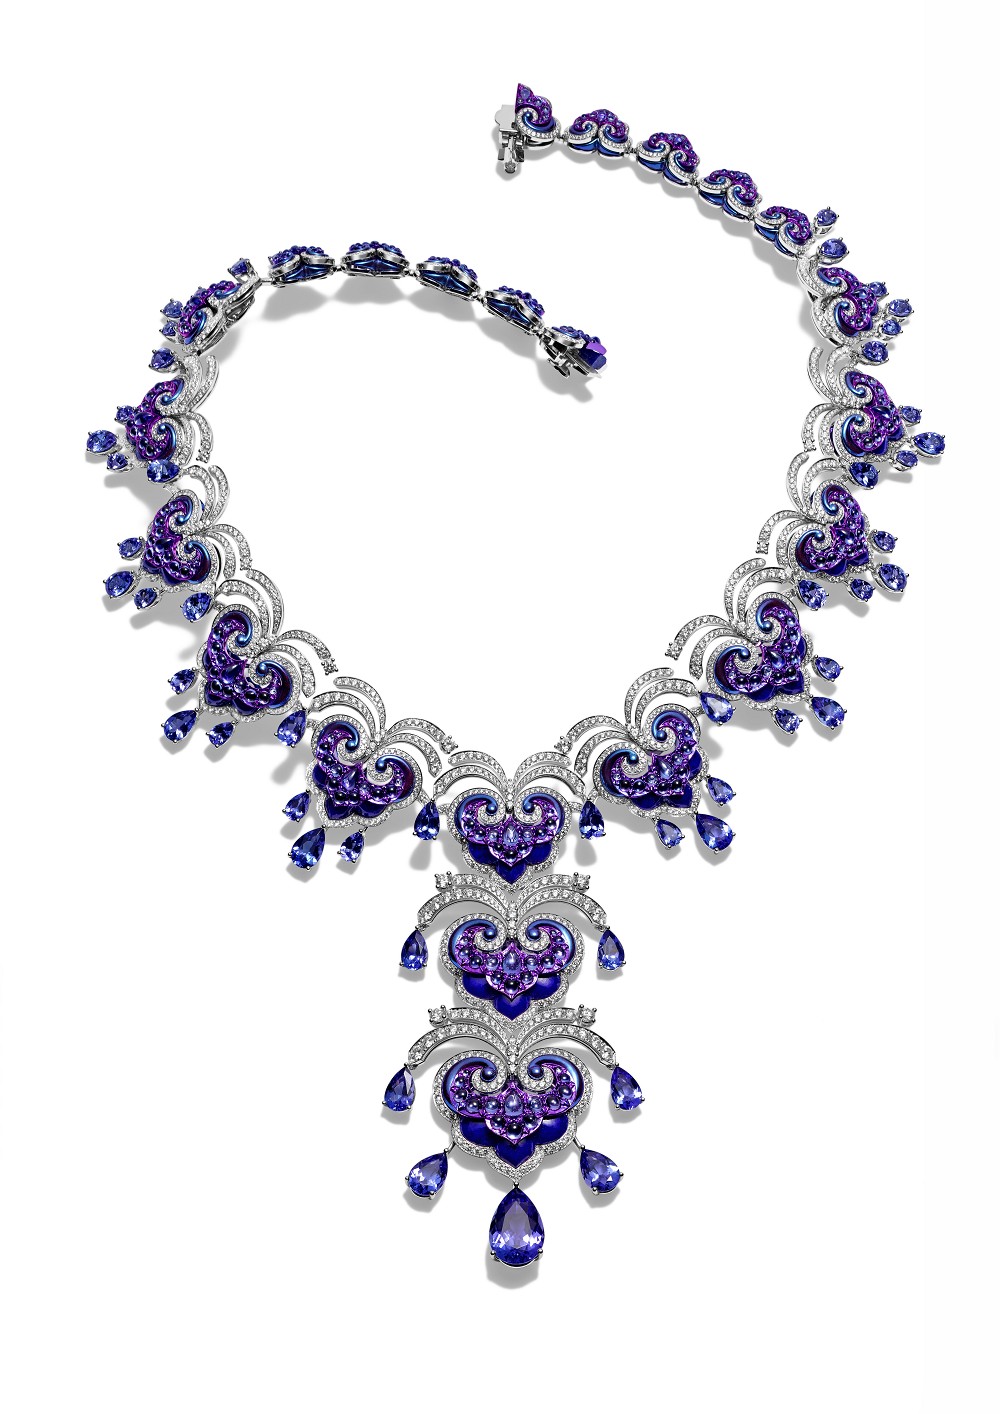 『珠宝』Chopard 推出 La Parisienne 高级珠宝系列：浪漫巴黎